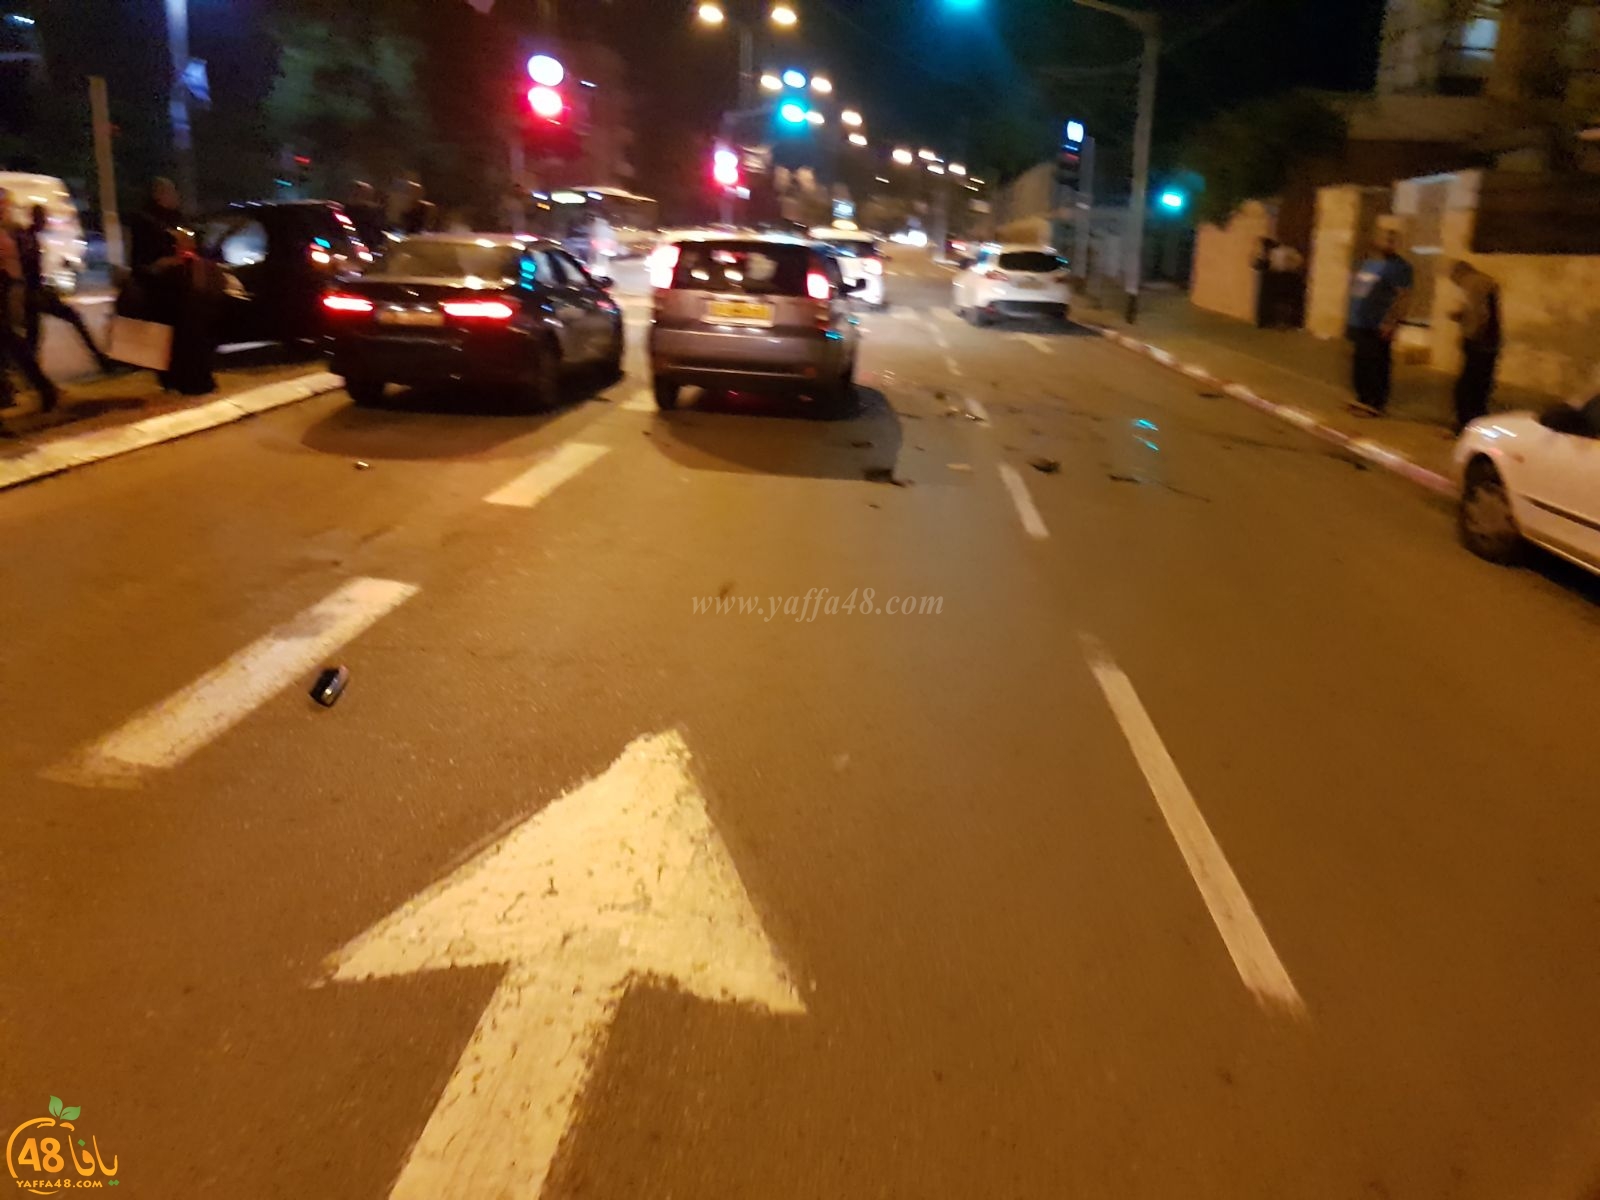  منتصف الليلة - اصابة شخص بحادث طرق بين عدة مركبات في يافا 